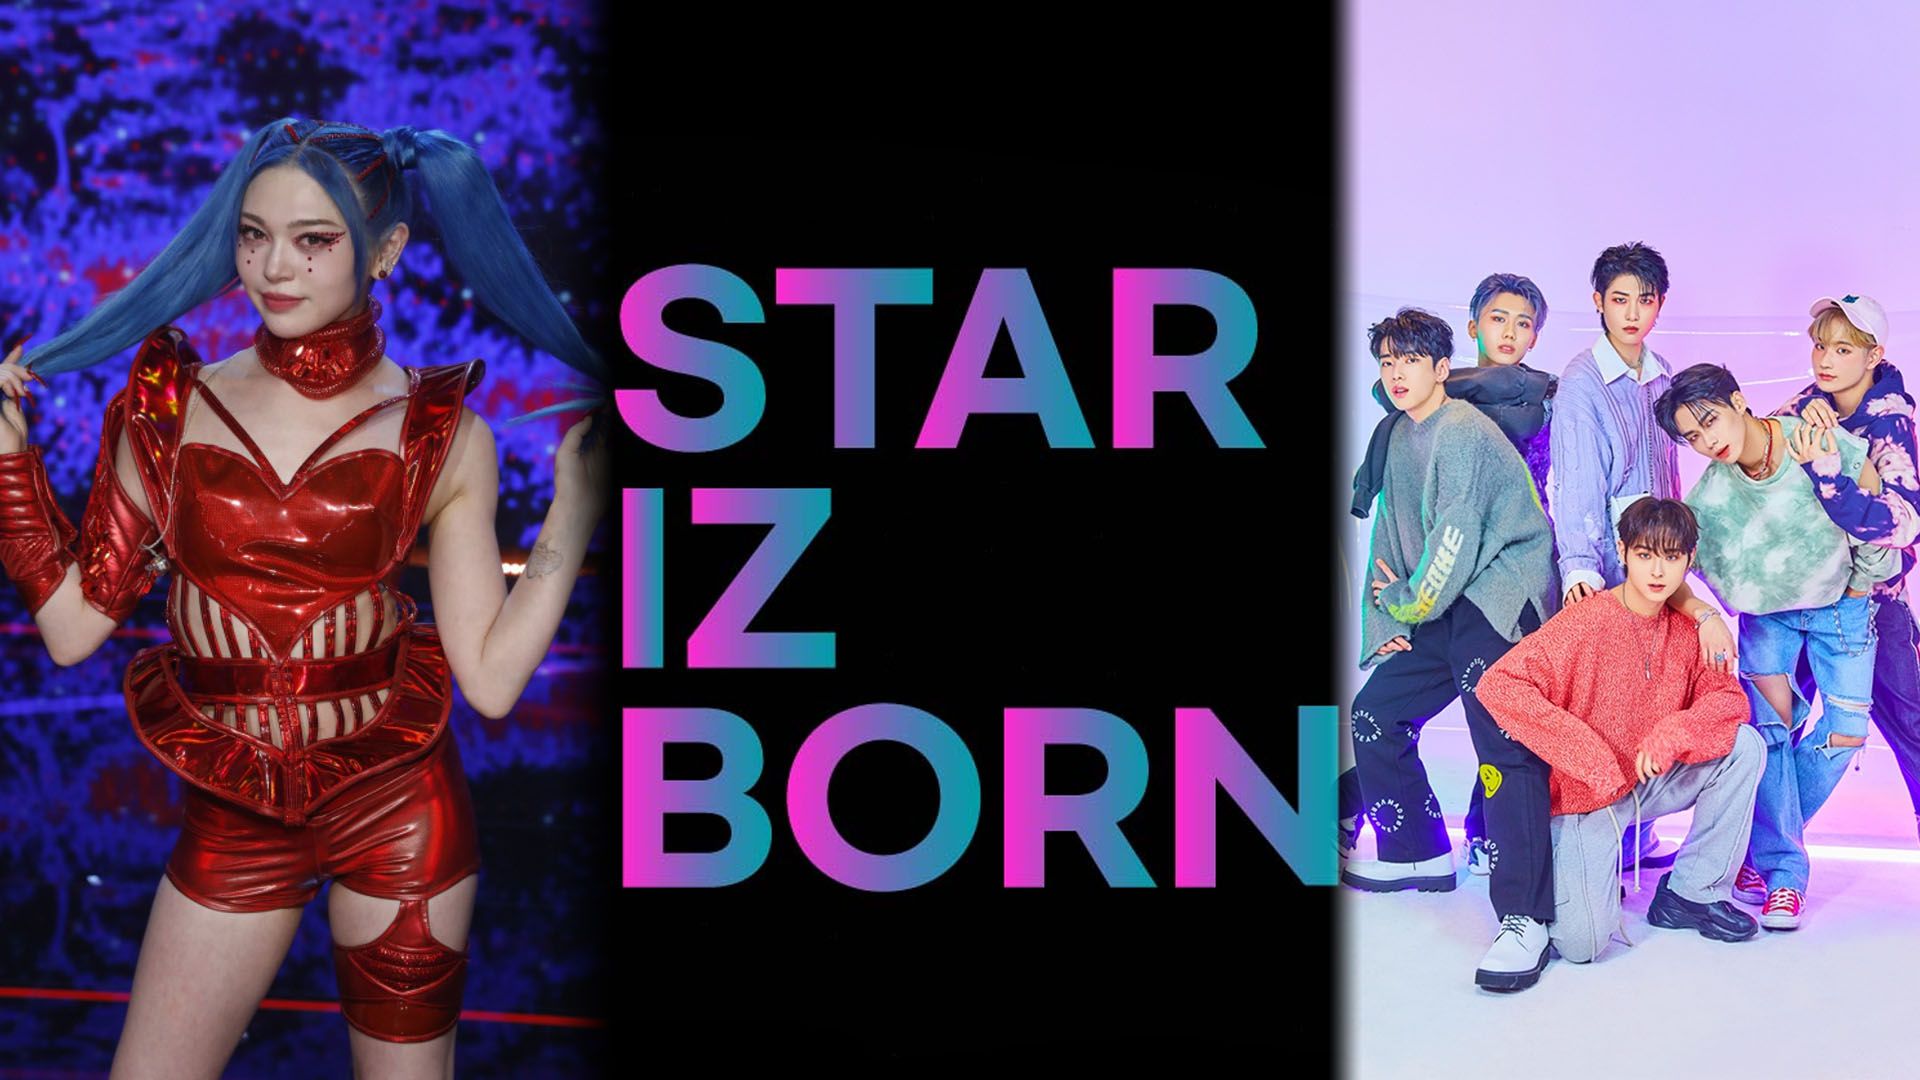 Star iz Born: programa de audiciones para fans del K-Pop con el que podrías viajar a Corea del Sur y colaborar con artistas